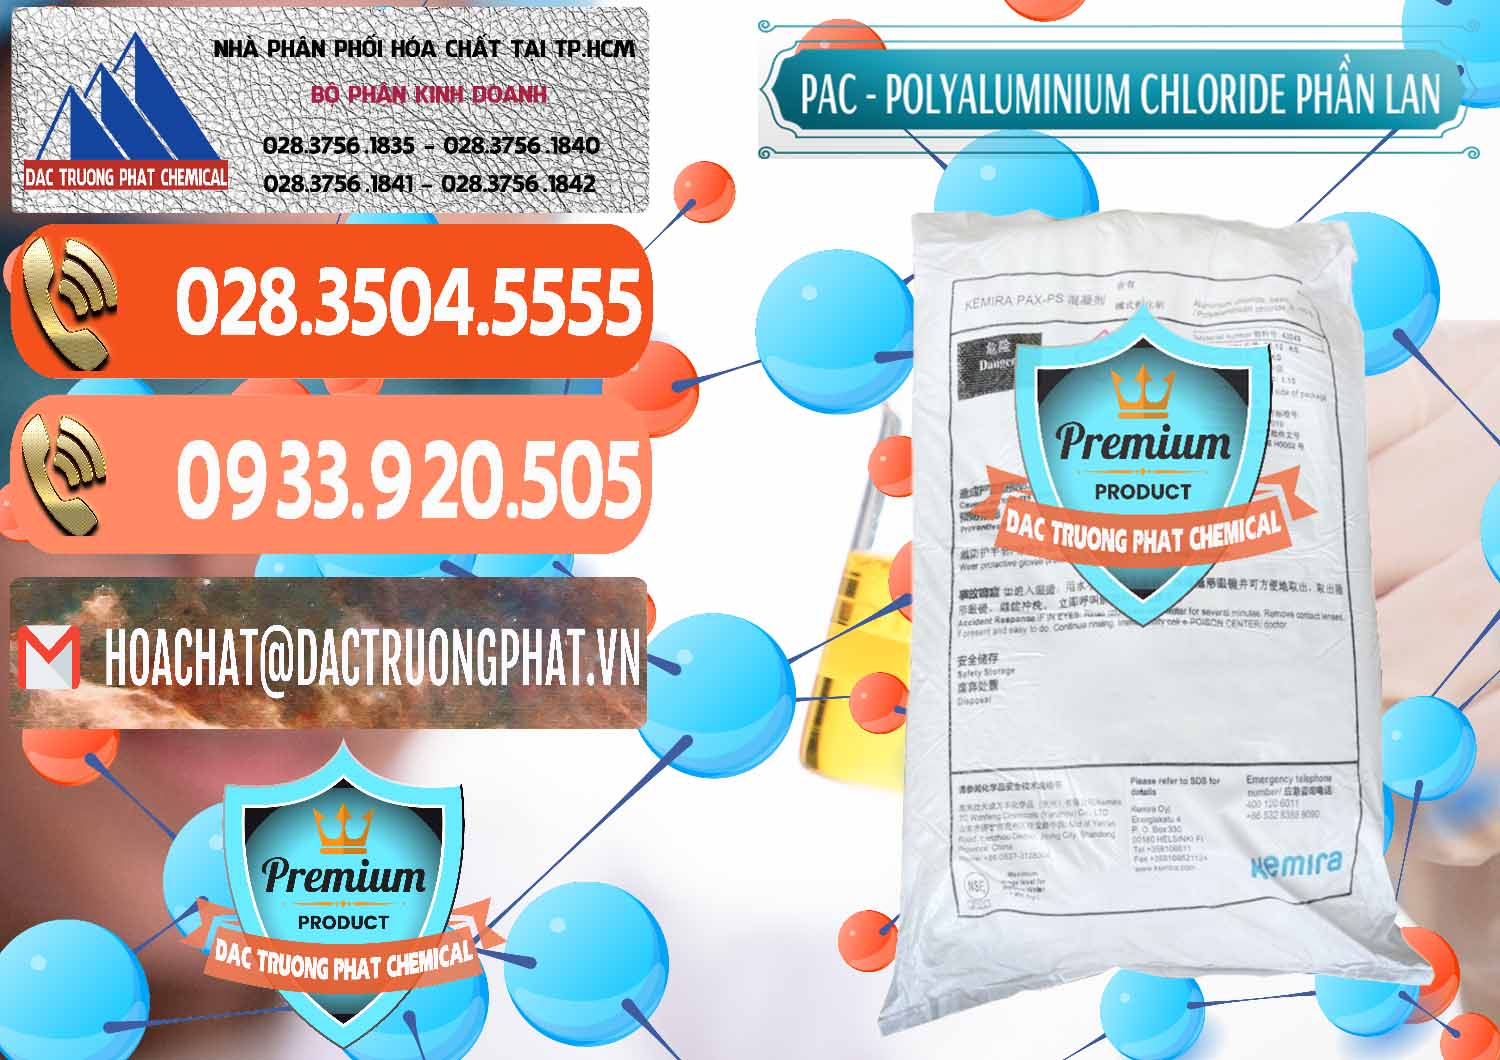 Cty chuyên bán và cung ứng PAC - Polyaluminium Chloride Phần Lan Finland - 0383 - Cty chuyên phân phối ( nhập khẩu ) hóa chất tại TP.HCM - hoachatmientay.com